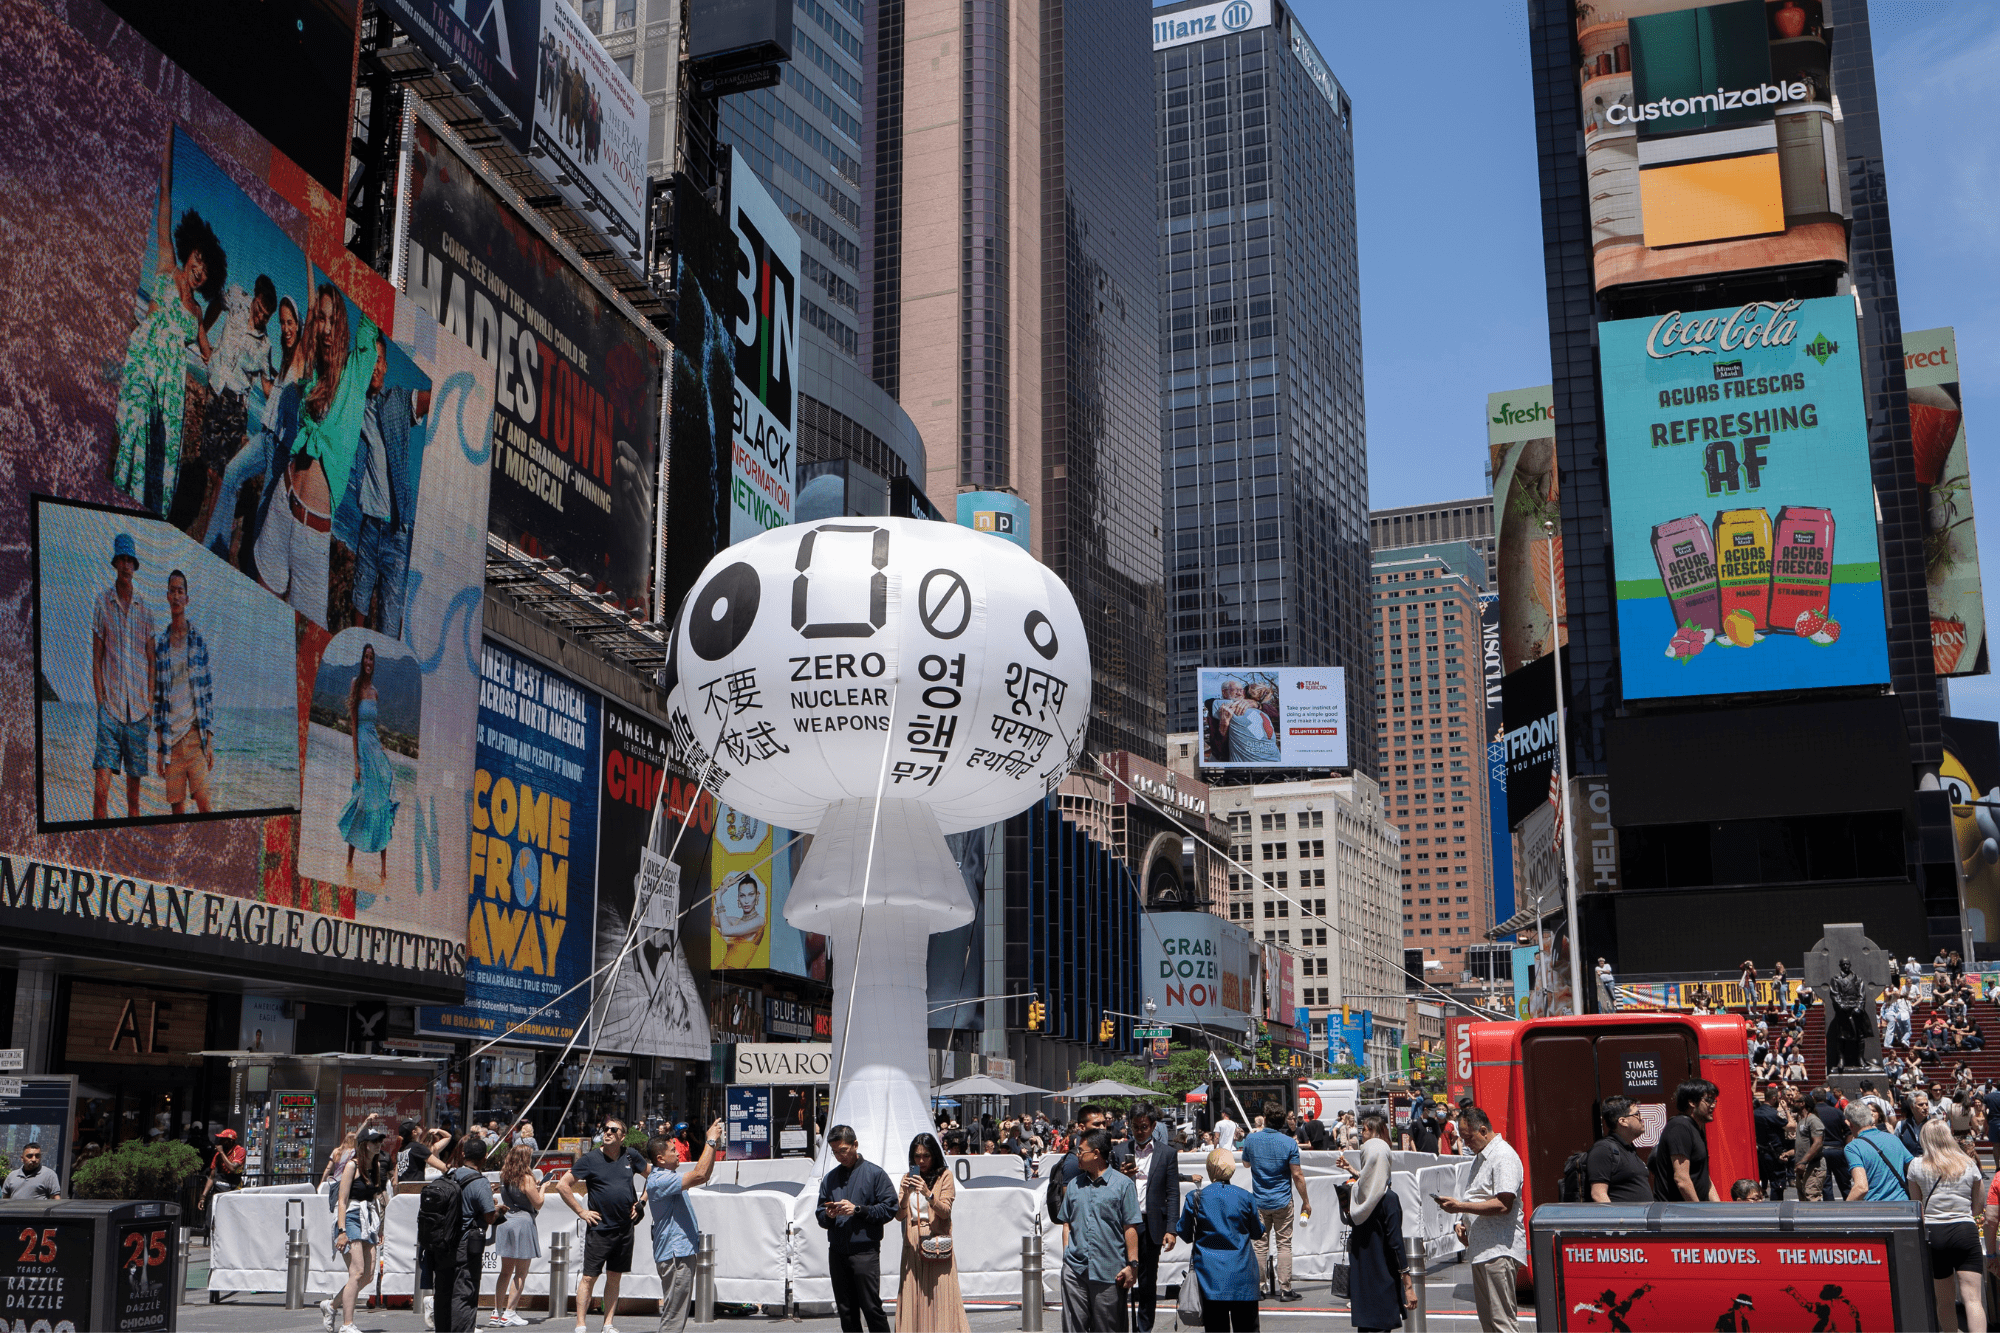 Pedro Reyes Zero Nukes, Installation view, Times Square, New York City, 2022